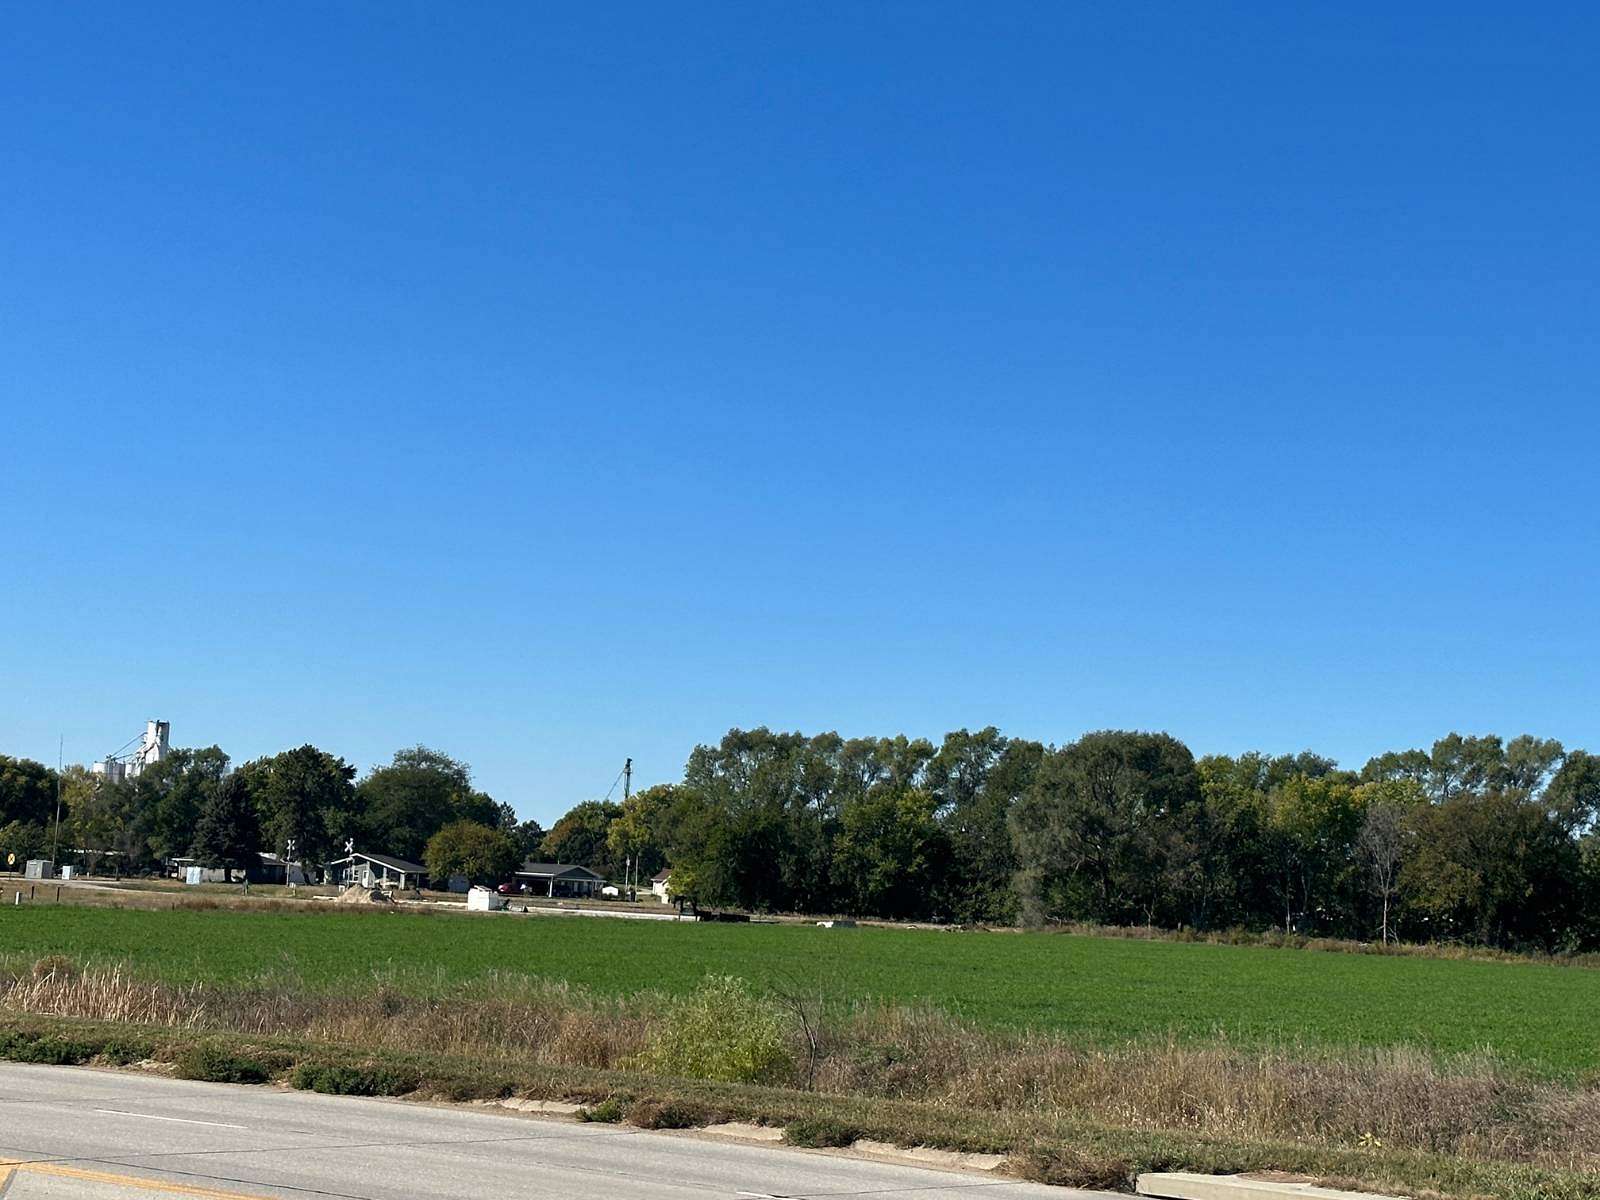 8.5 Acres of Commercial Land for Sale in St. Paul, Nebraska